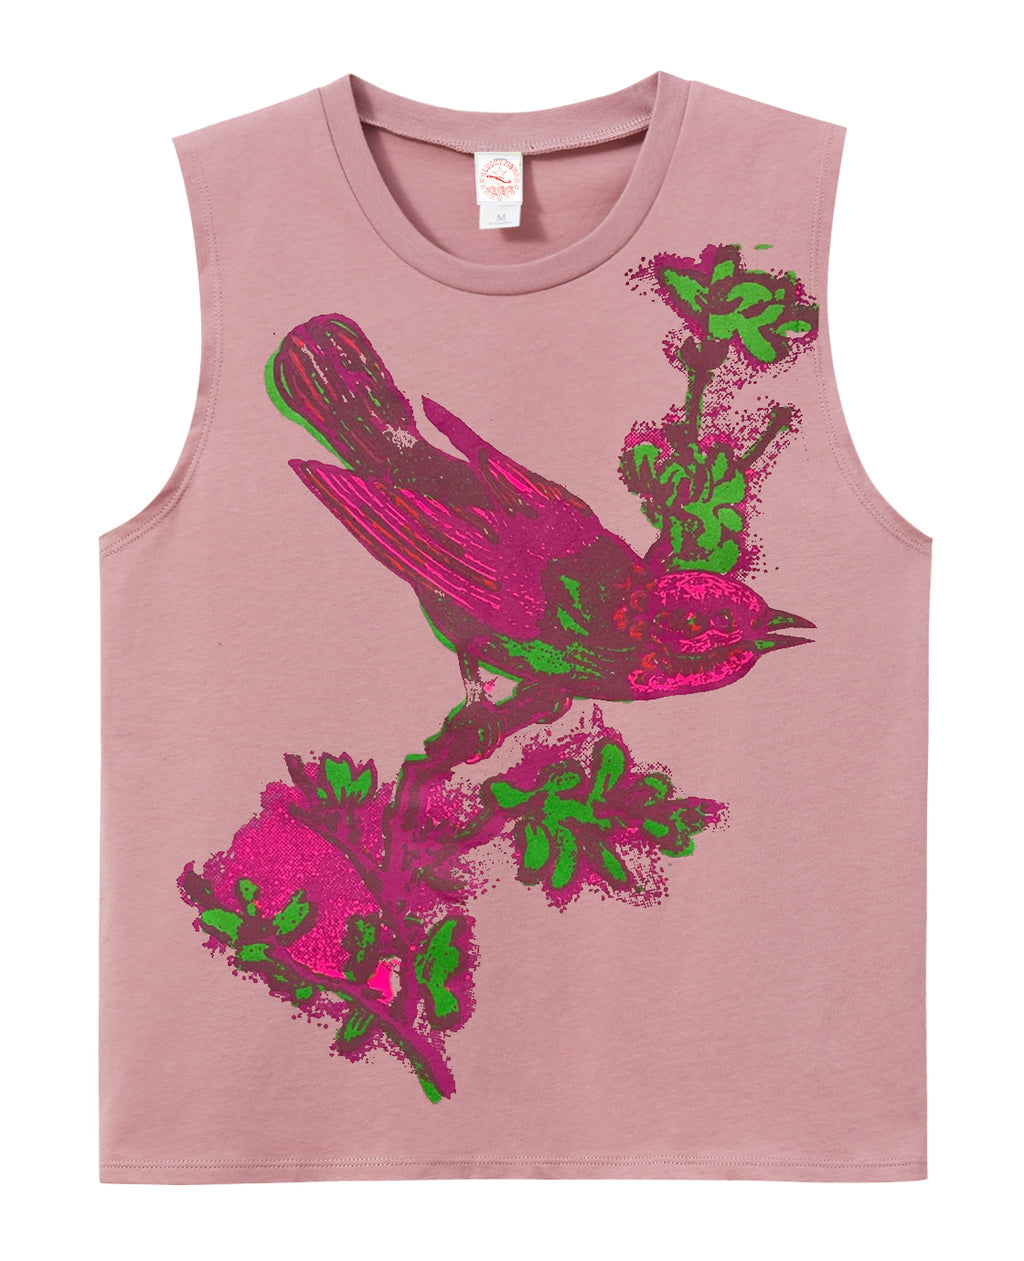 Pink Birdie Muscle Shirt